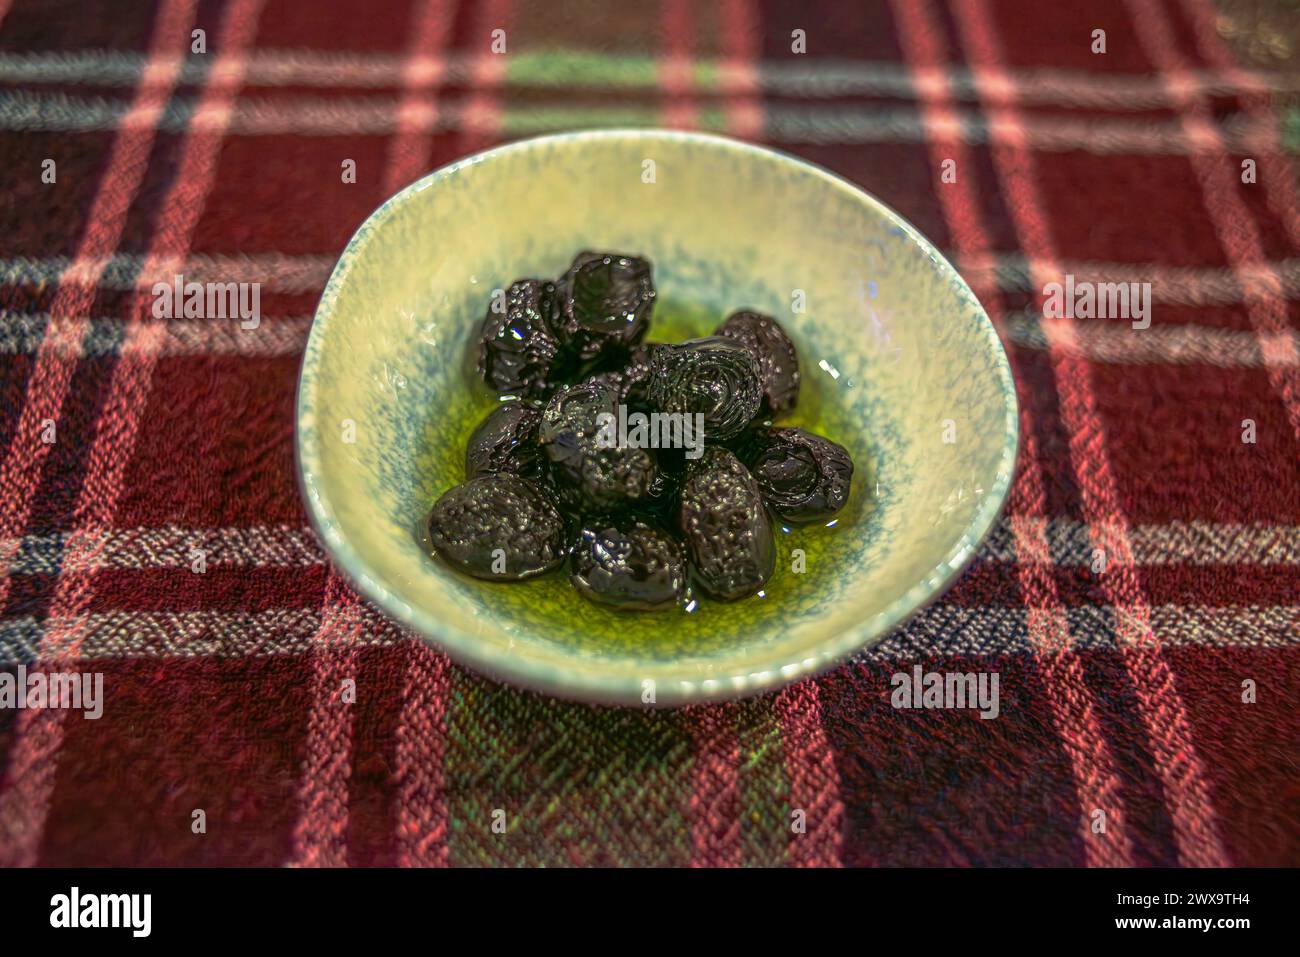 Offrez-vous un délice culinaire avec des olives dans un petit plat, offrant une gamme alléchante de saveurs et de textures dans un hors-d'œuvre savoureux. Banque D'Images